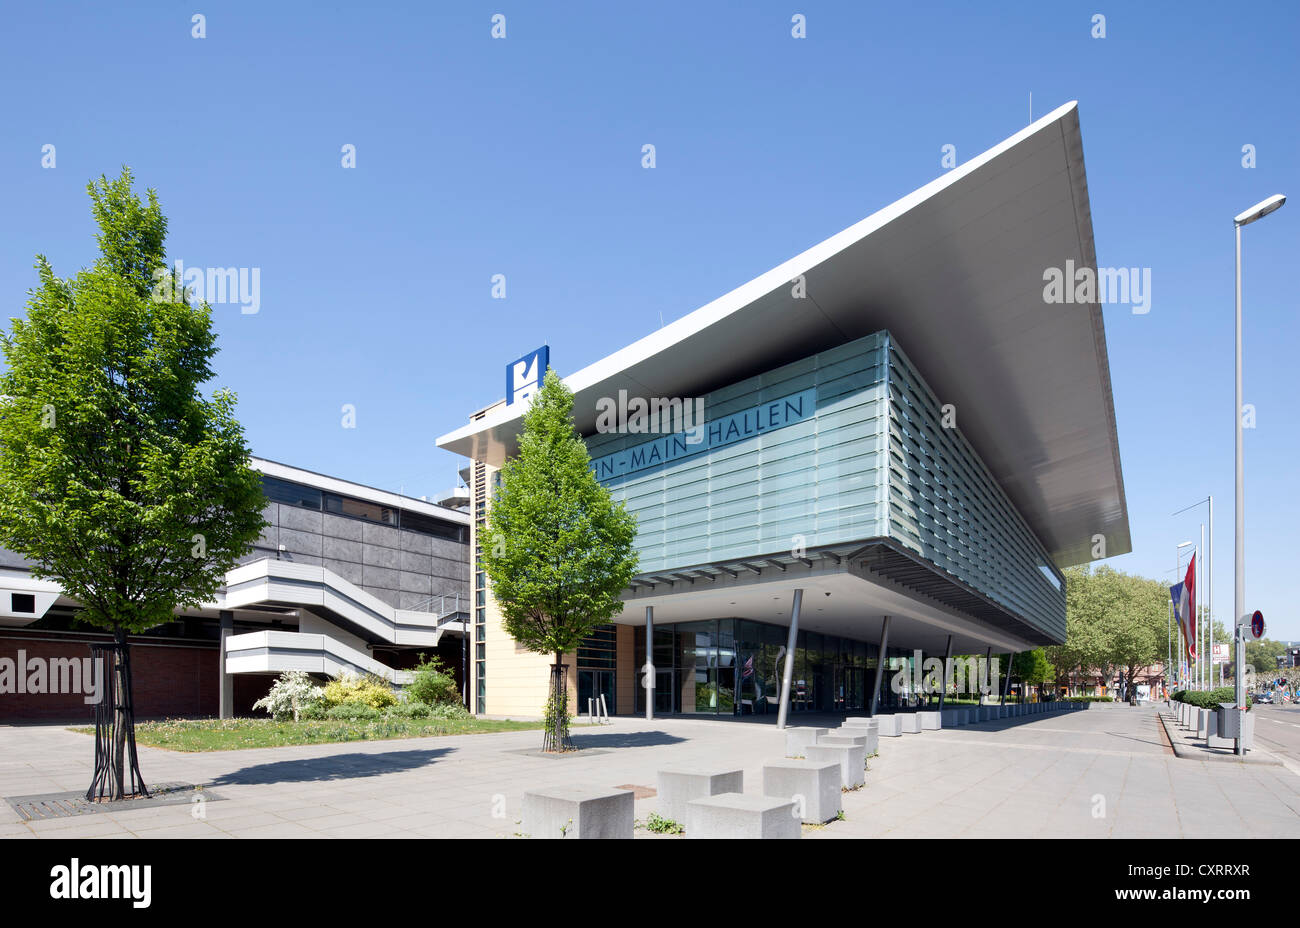 Rhein-Main Halls, Exhibition and Convention Center, Wiesbaden, Hesse, Germany, Europe, PublicGround Stock Photo